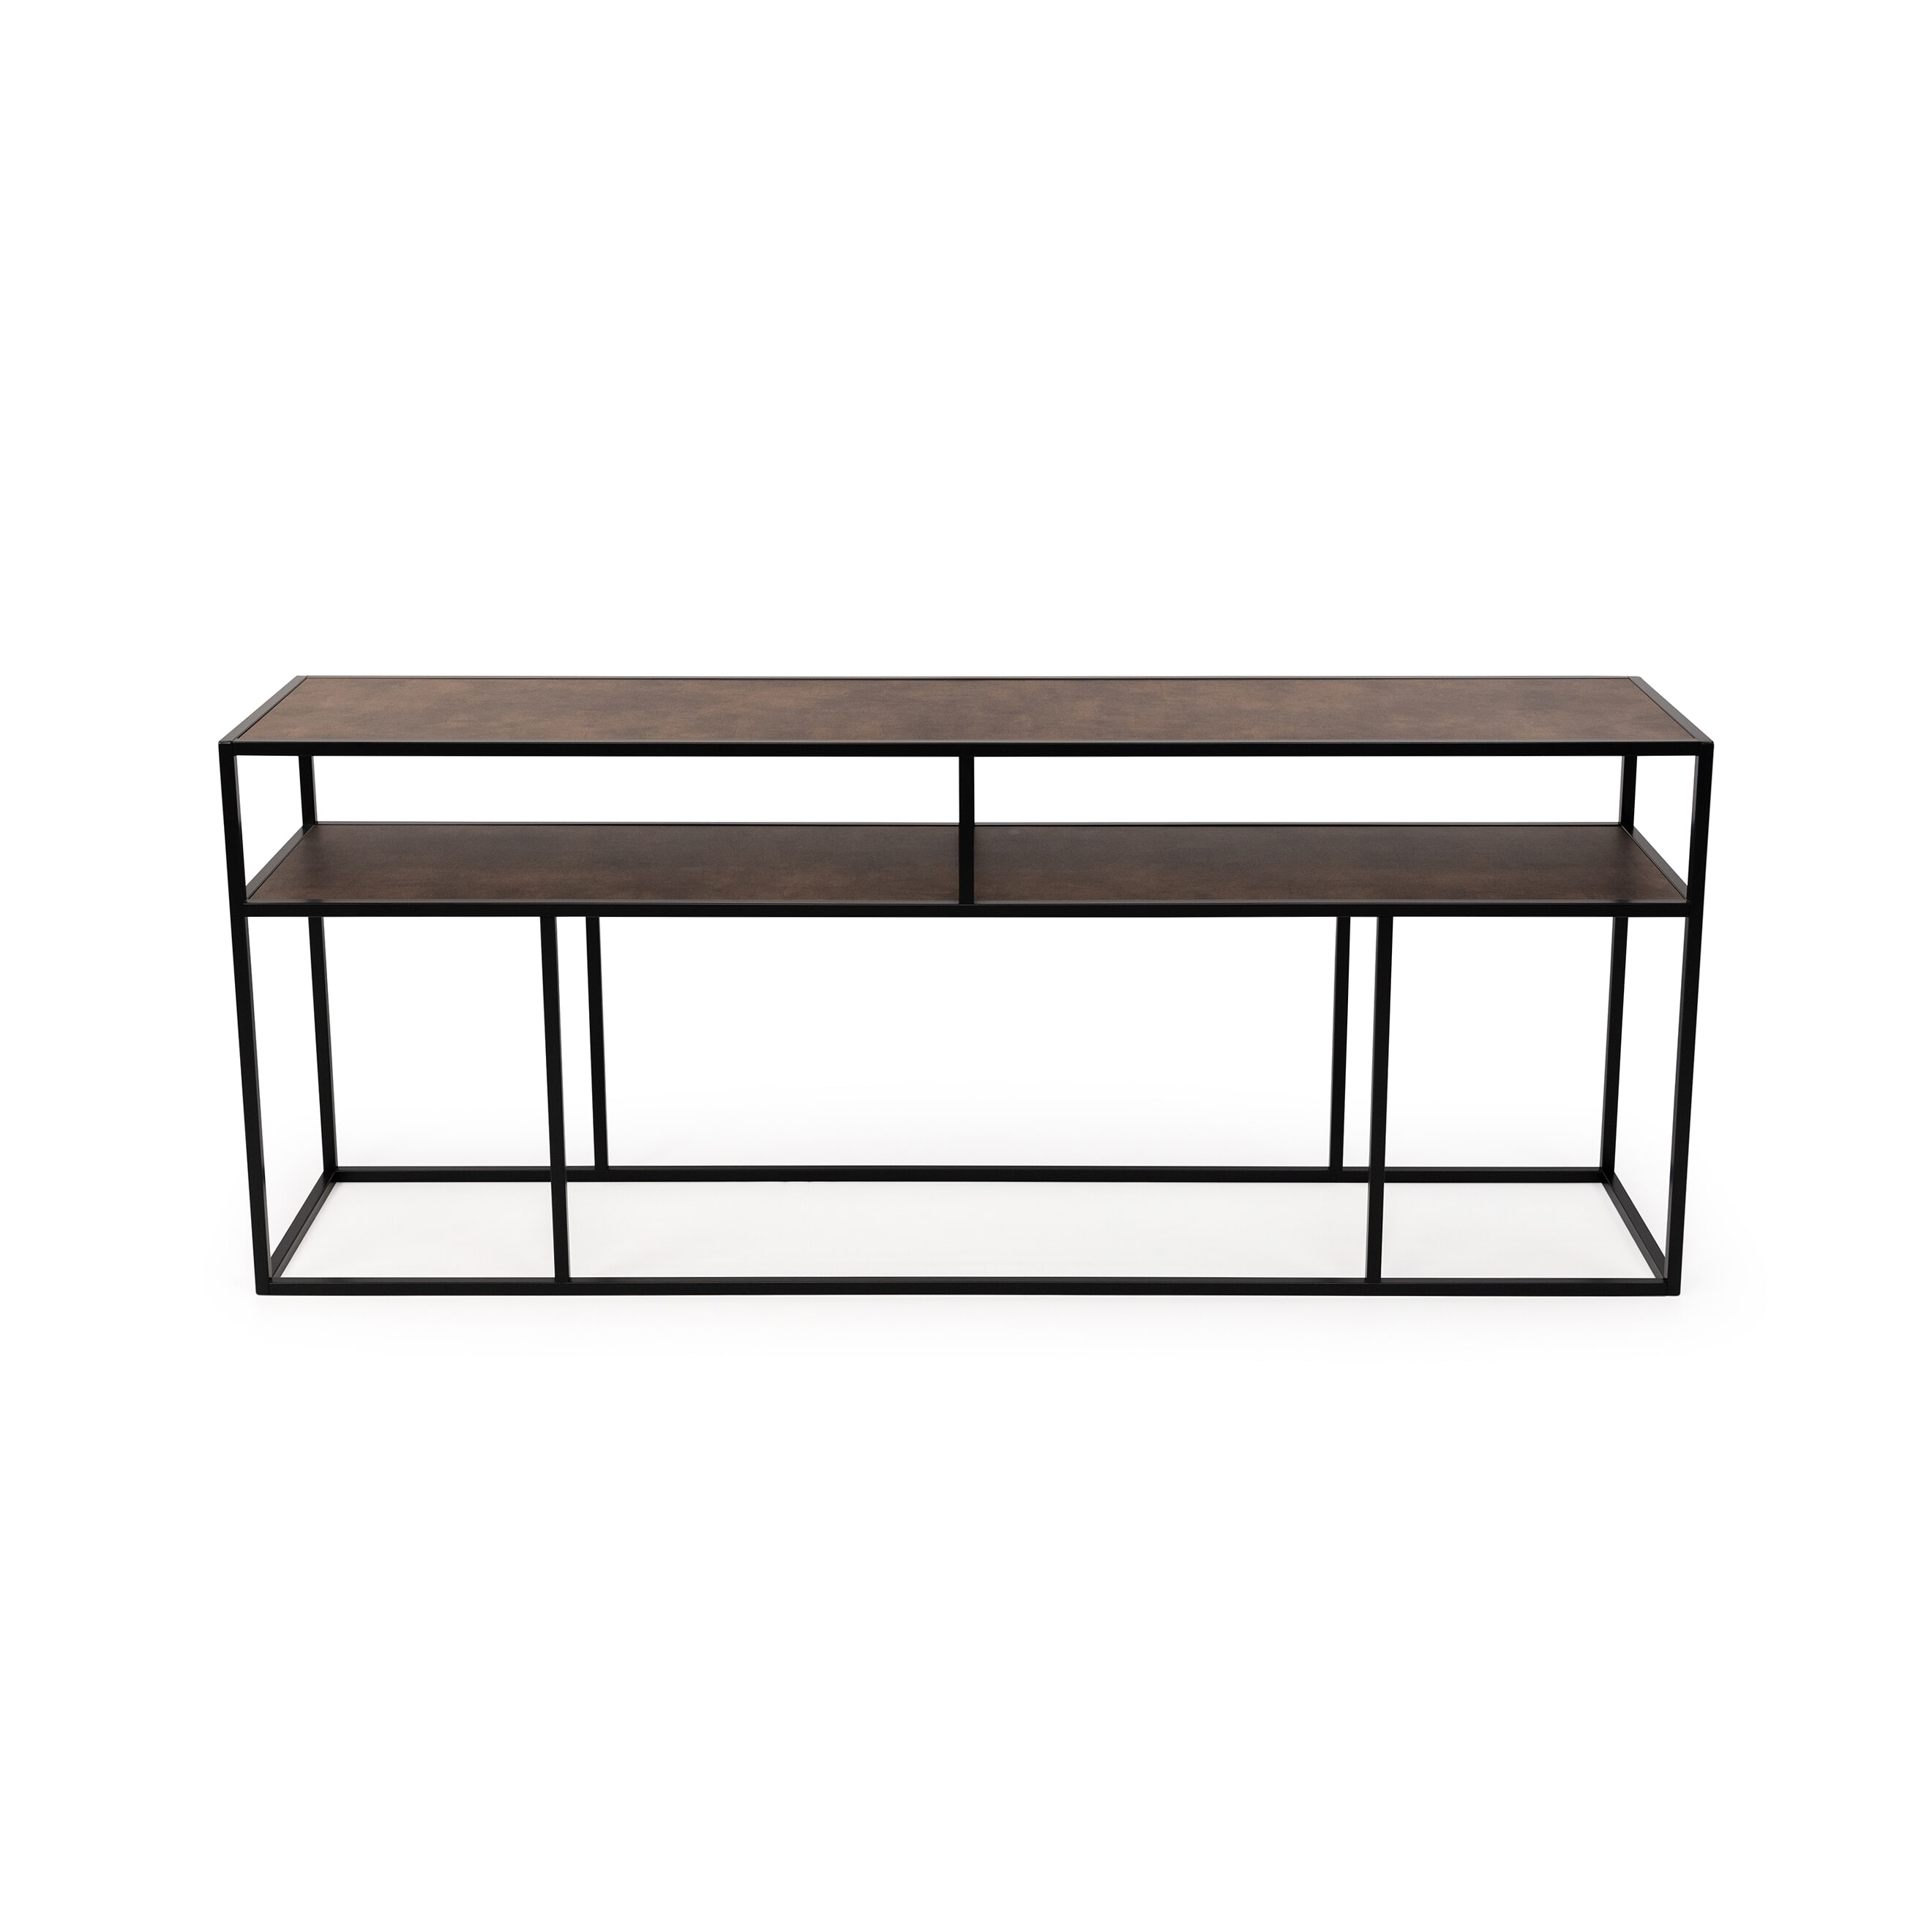 STALUX Side-table Teun 200cm - zwart / lederlook bruin